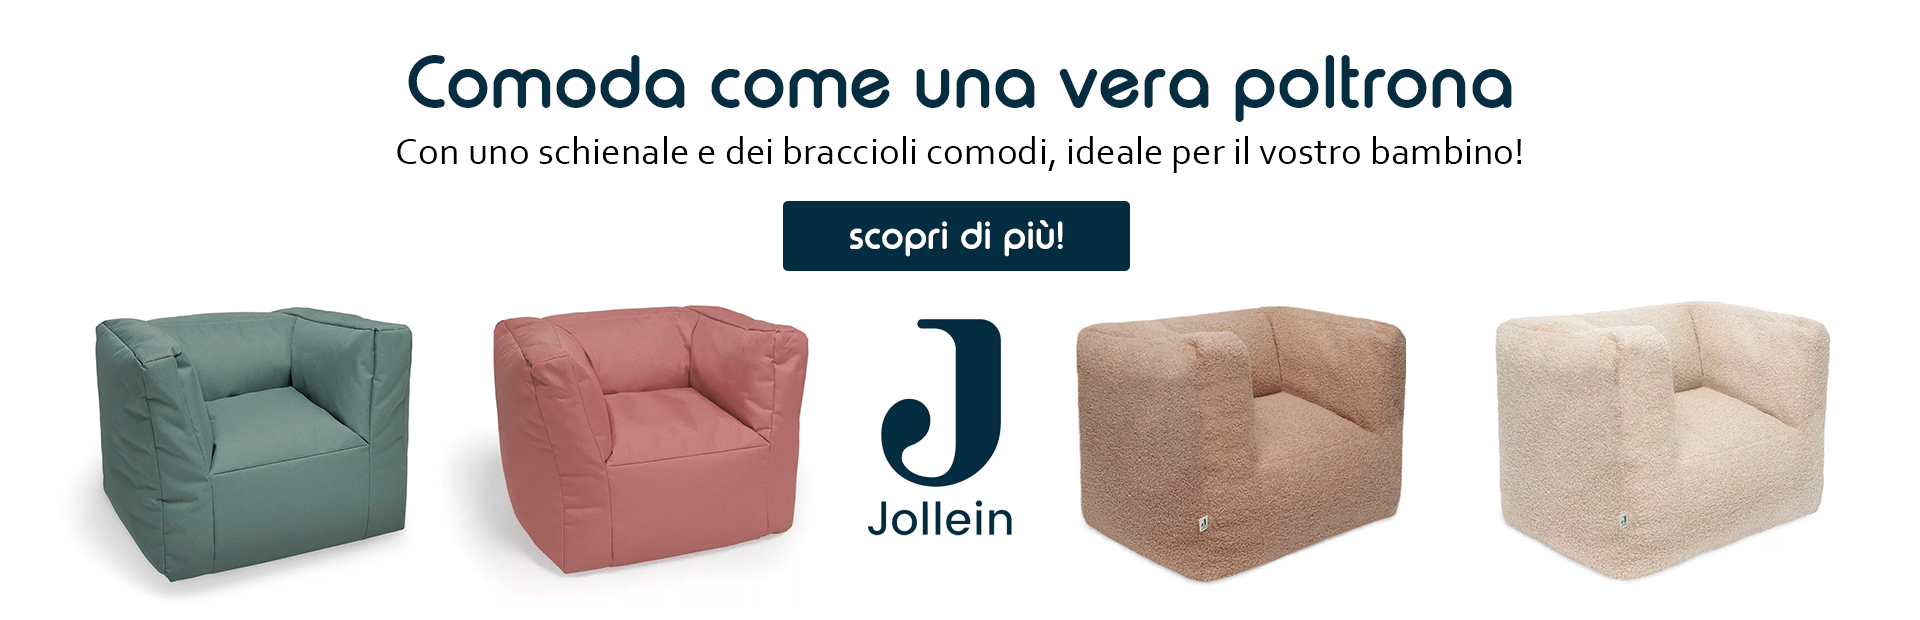 Cuscino - Rialzo sedia per bimbi - Tutto per i bambini In vendita a Trento